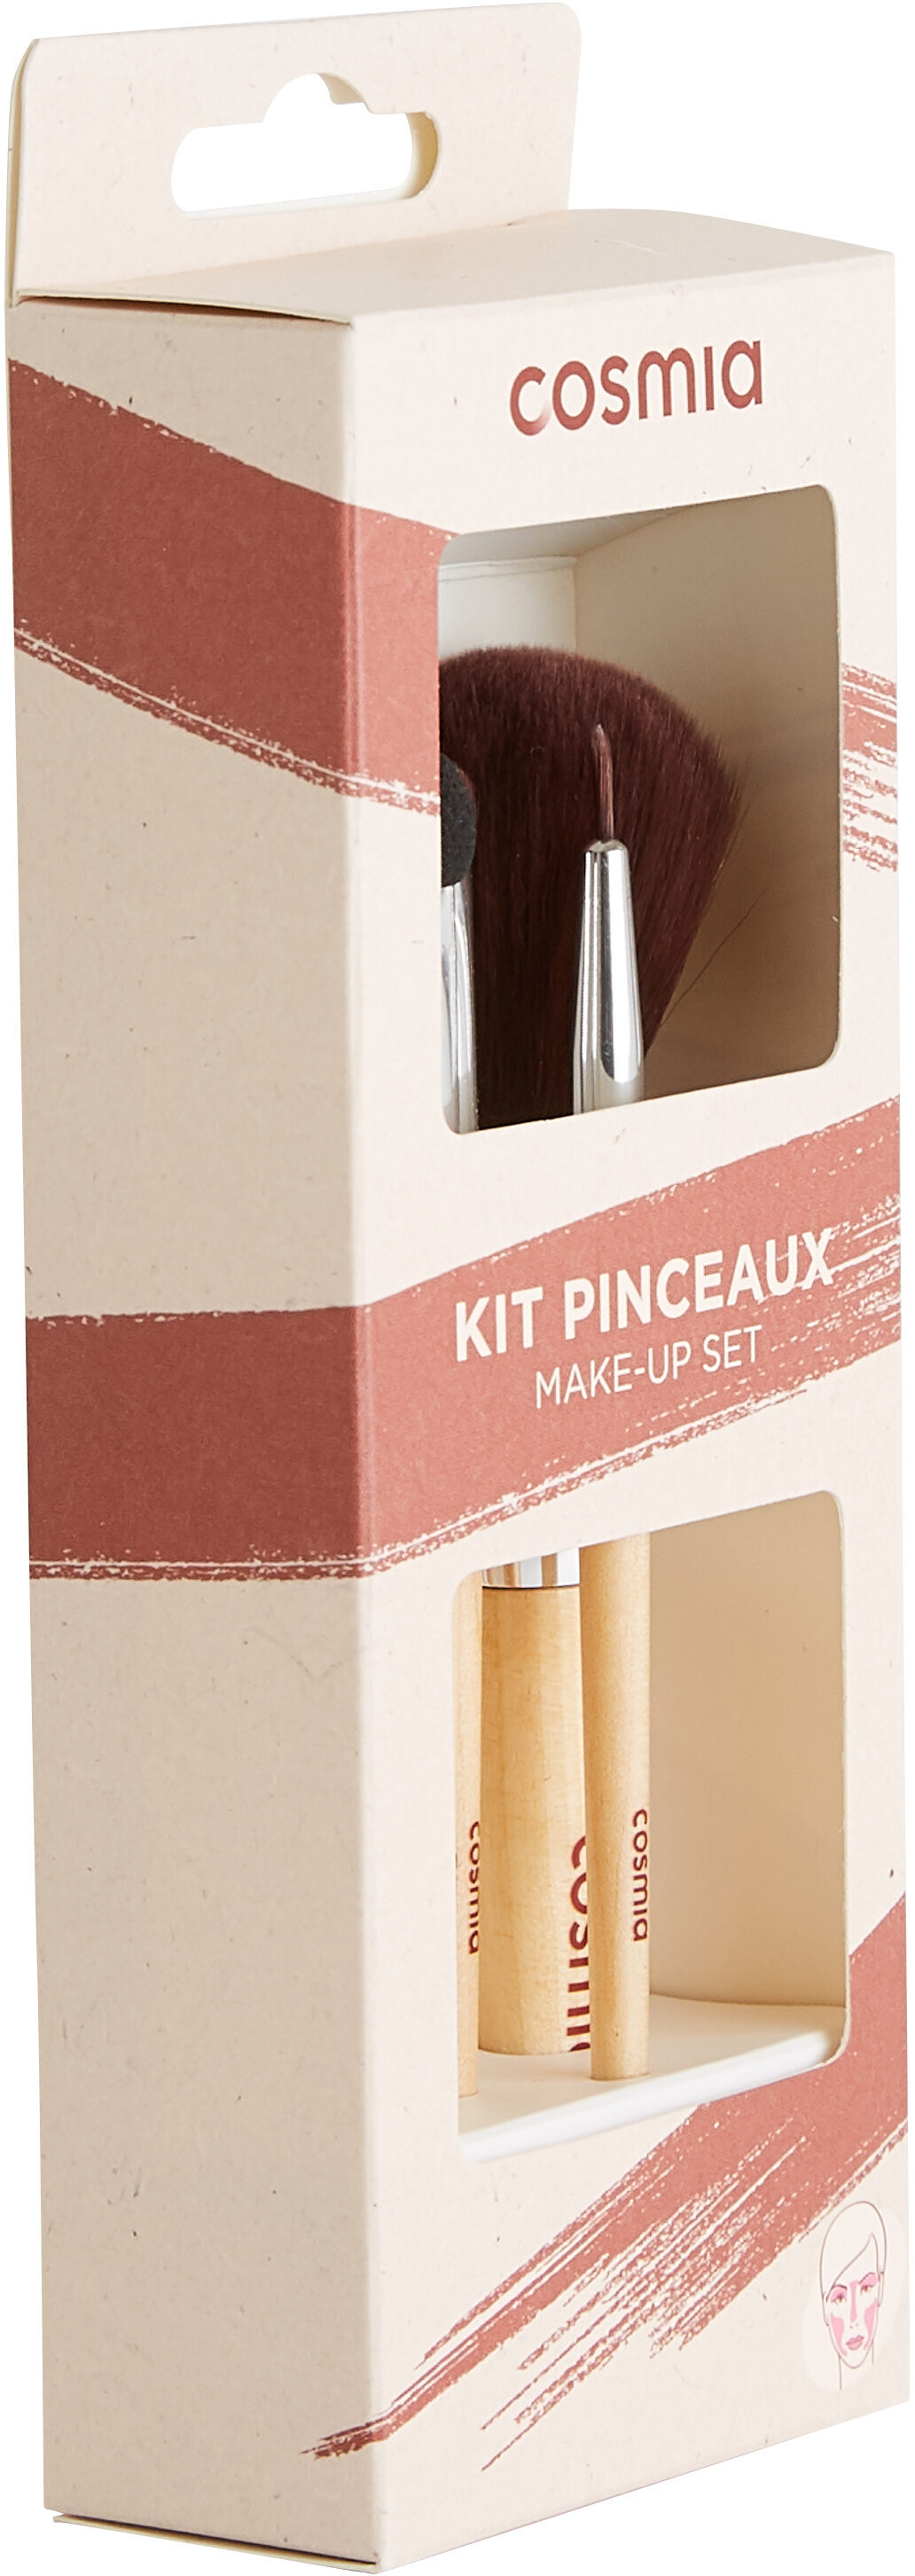 Kit pinceaux - Product - fr